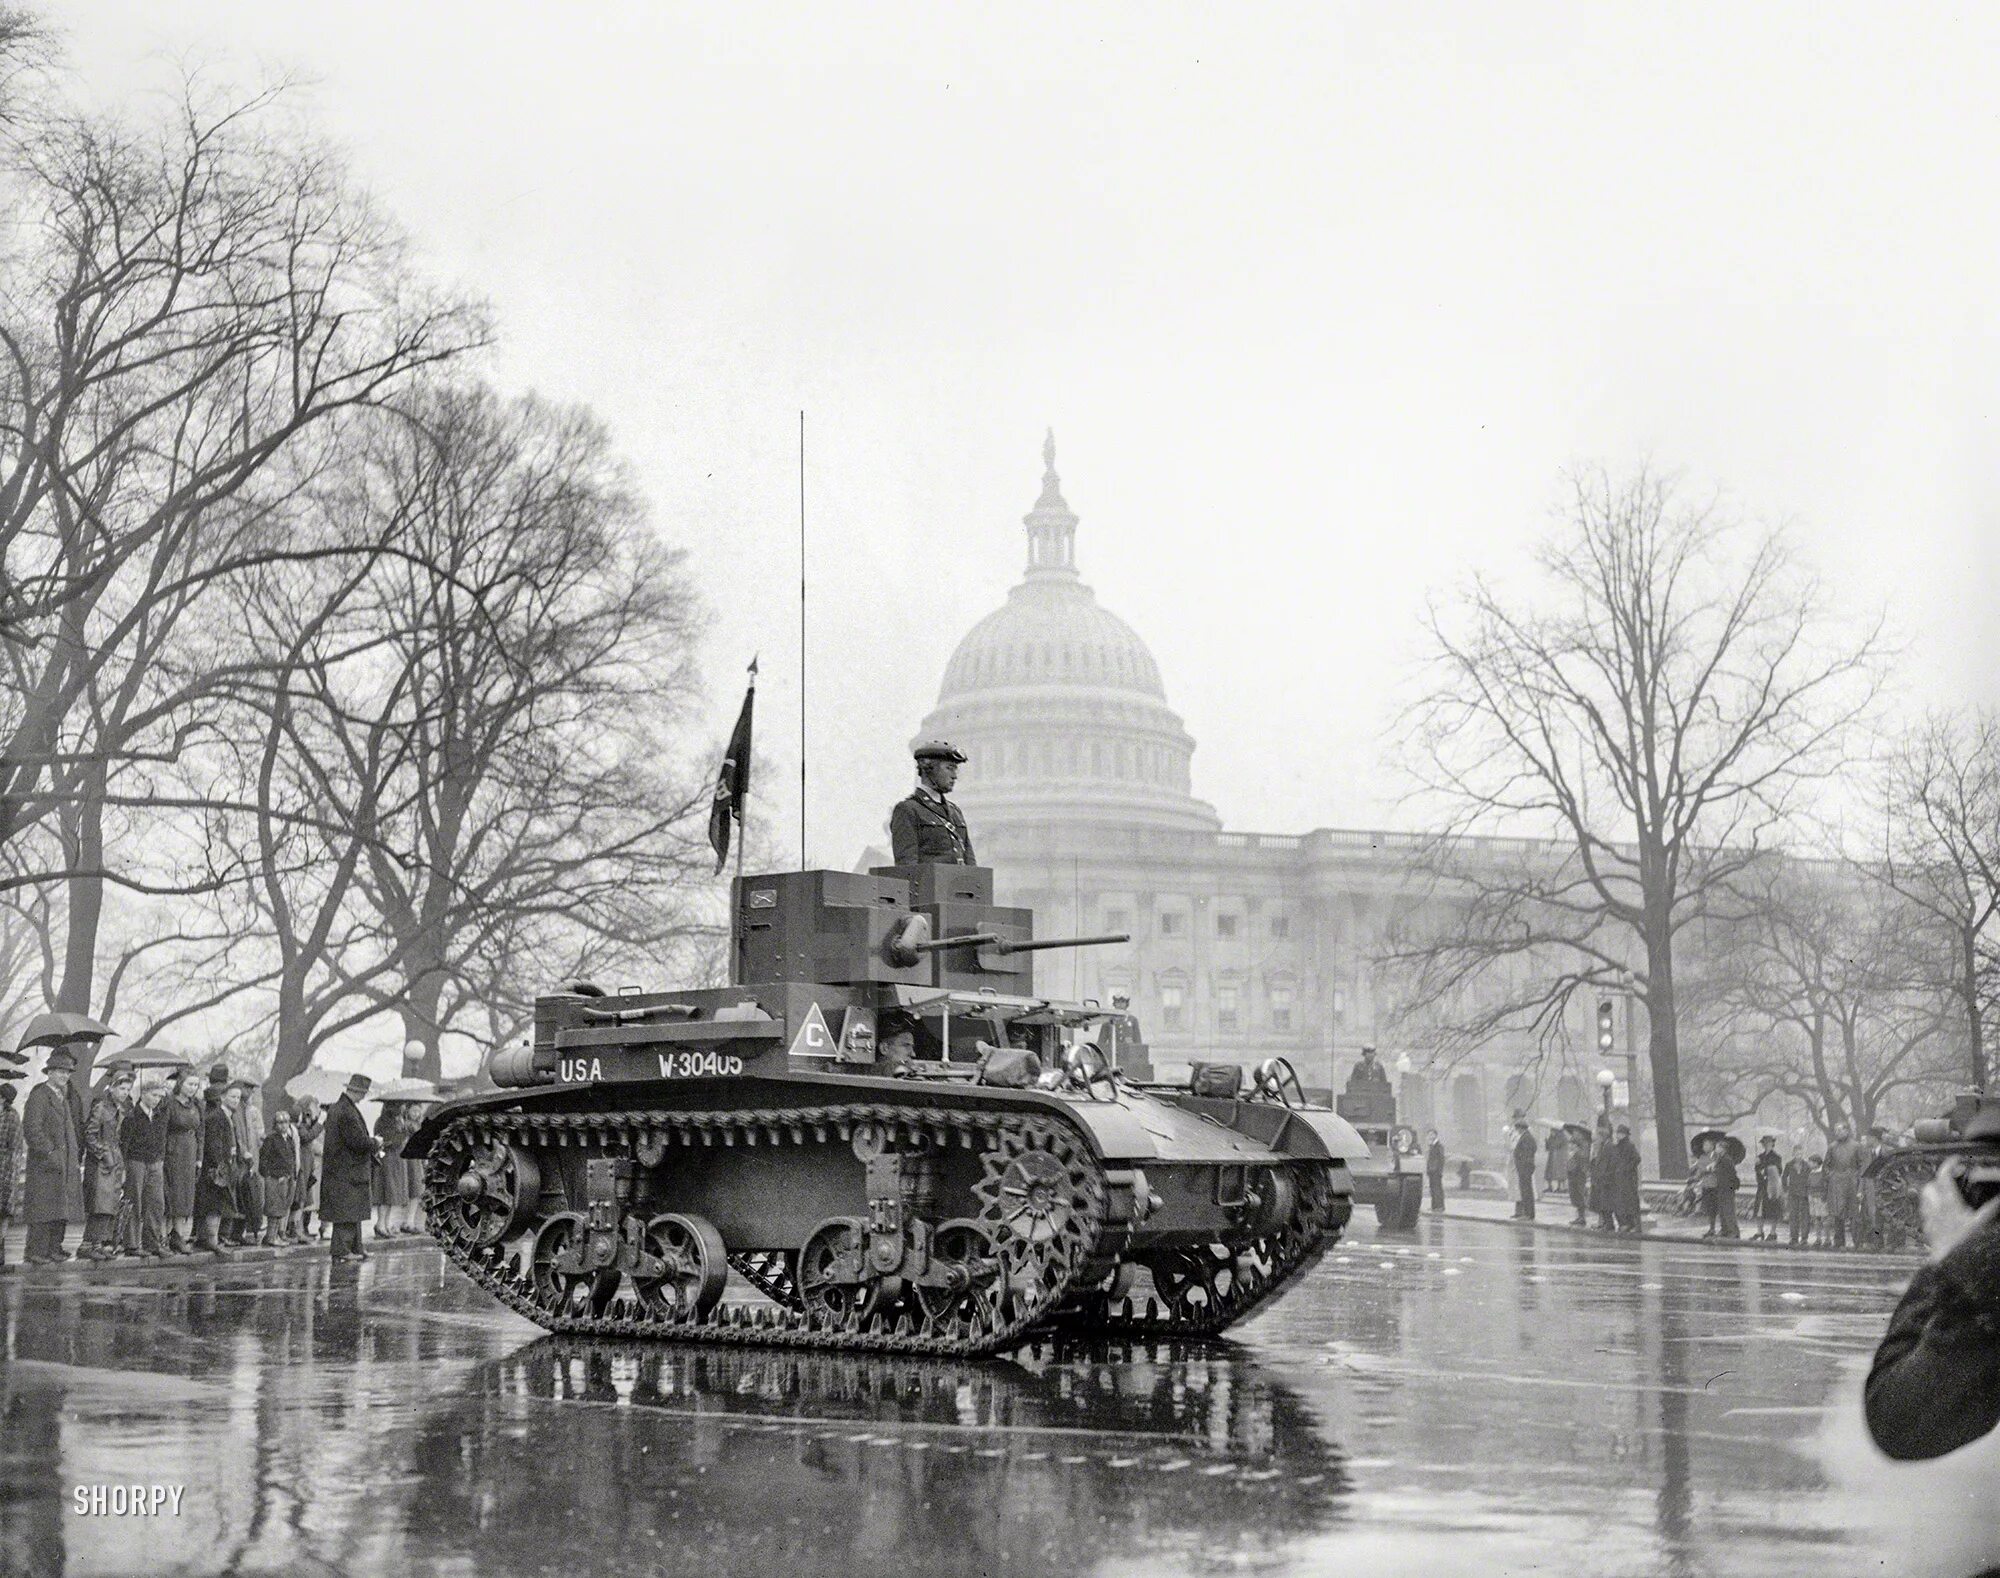 Америка Вашингтон 1940 парад. Танки 20 века. Танки США на параде. Американские танки 20 века. Апрель 1939 года